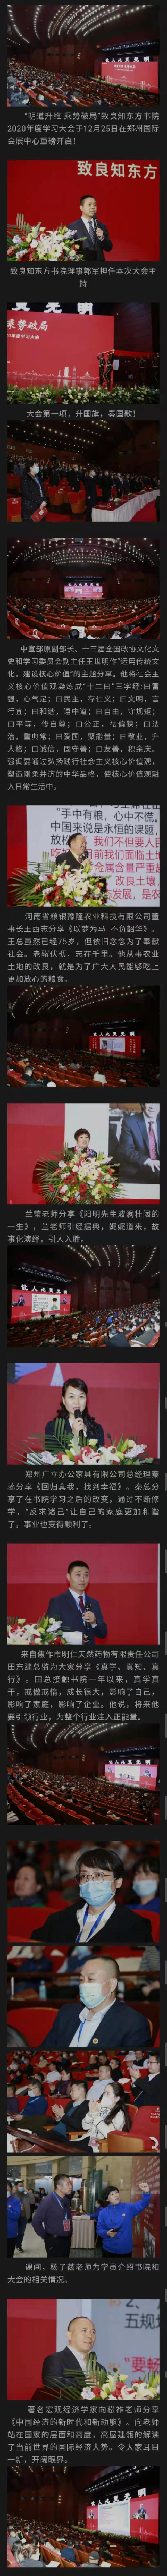 “明道升维 乘势破局”——致良知东方书院2020年度学习大会在郑州国际会展中心重磅开启